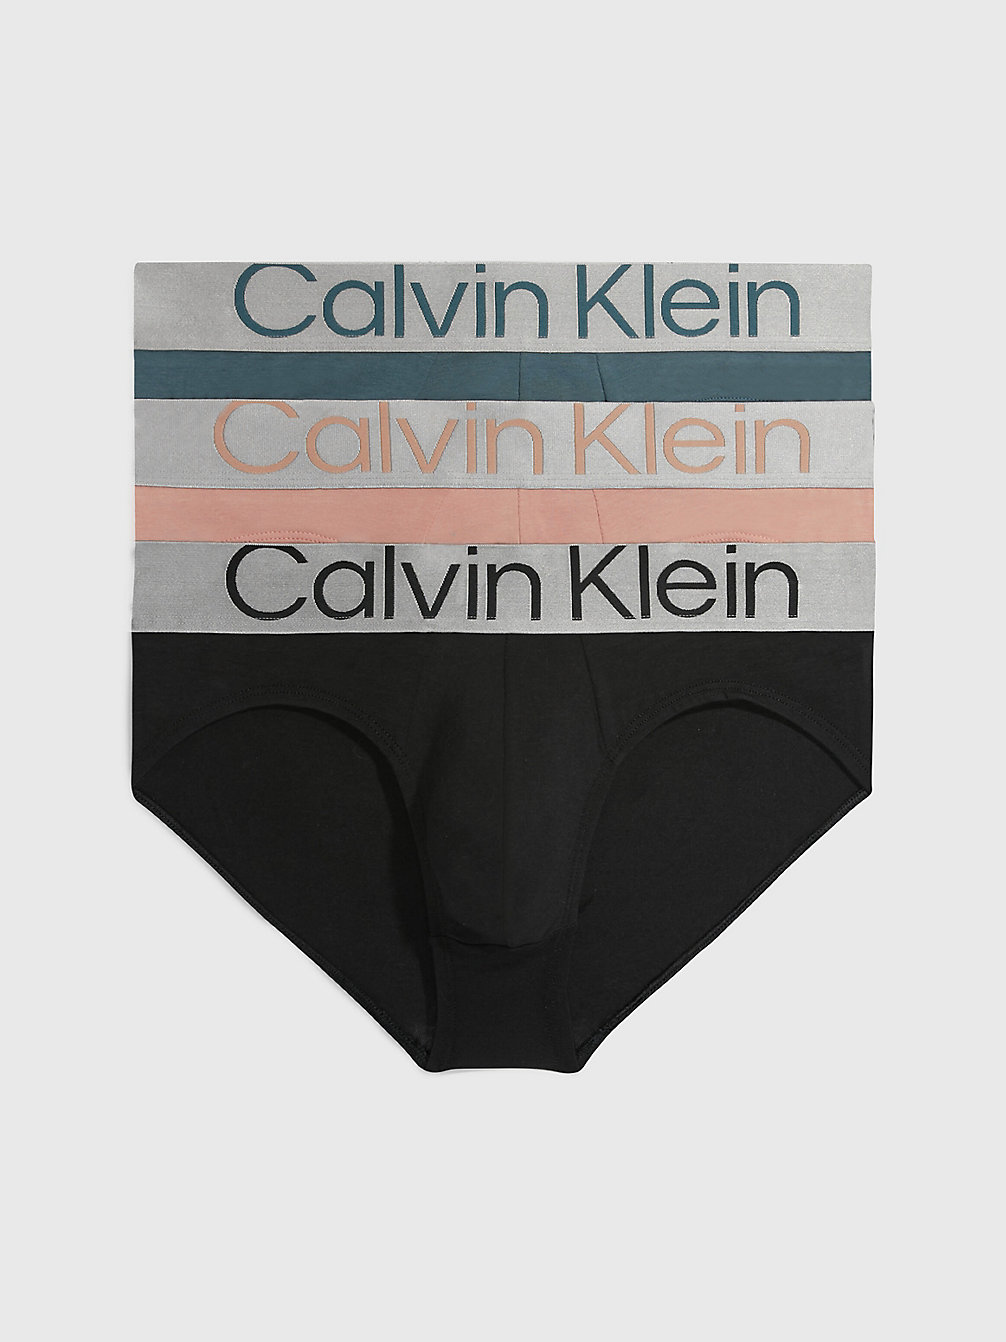 BLUE LAKE/ CLAY/ BLACK 3er-Pack Slips - Steel Cotton undefined Herren Calvin Klein